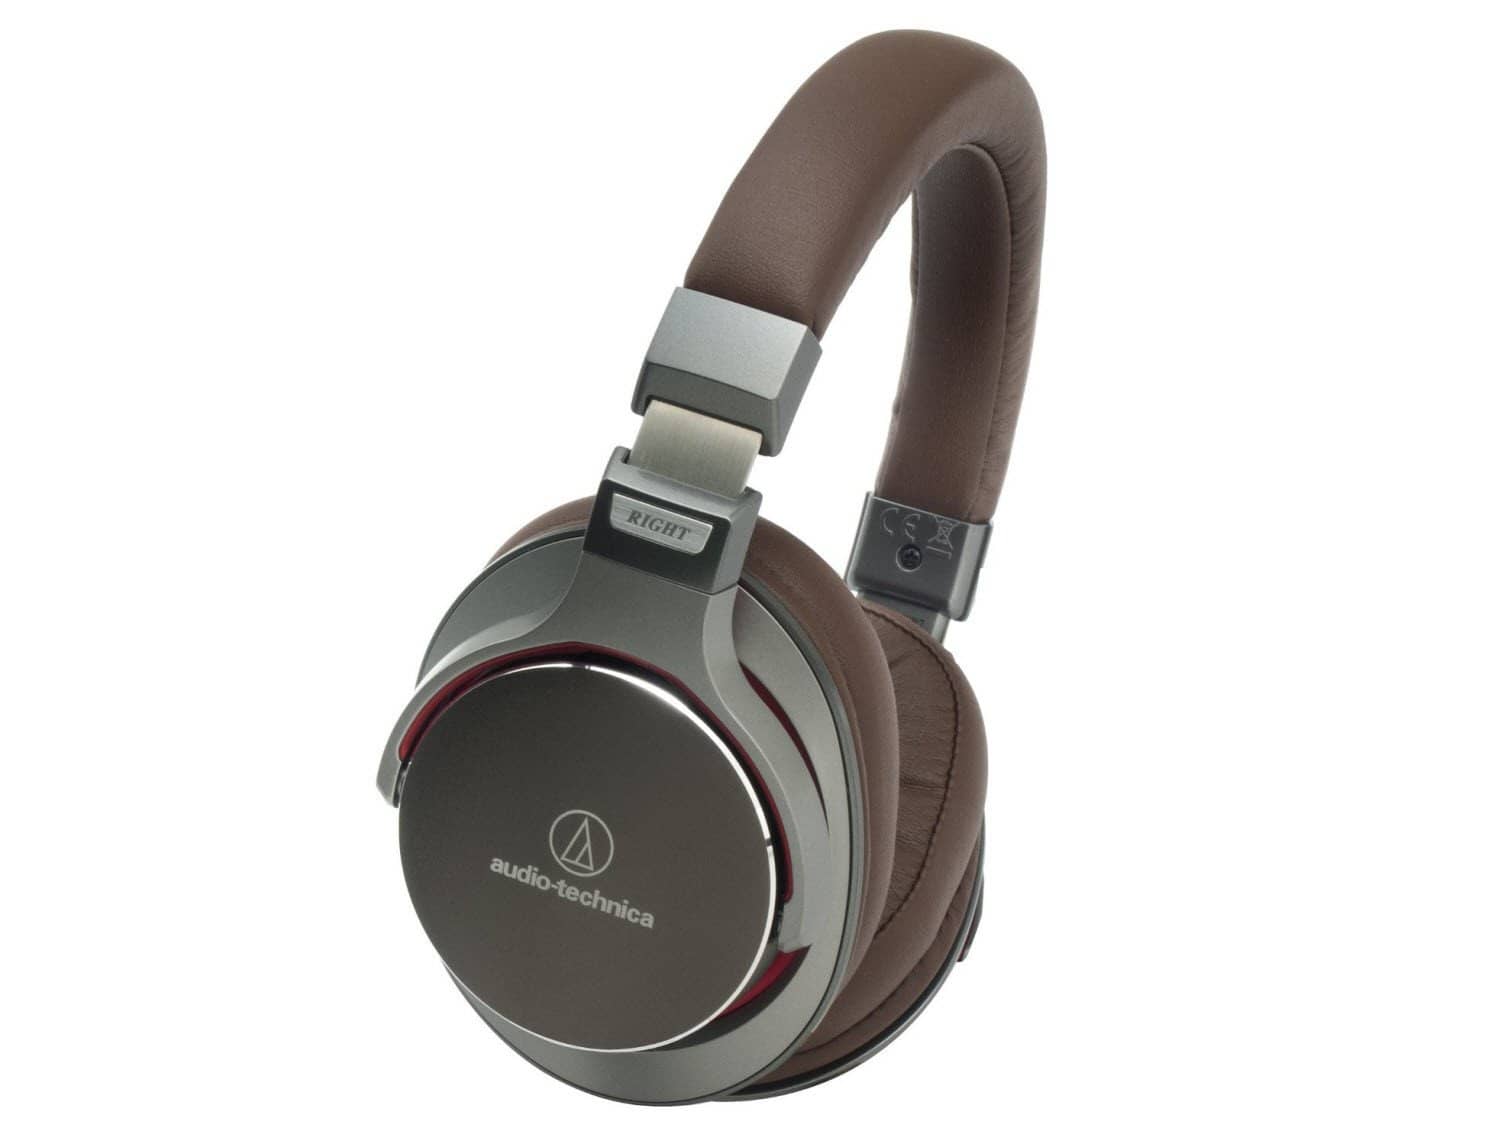 Audio-Technica ATH-MSR7 Audio Over-Ear Headphone